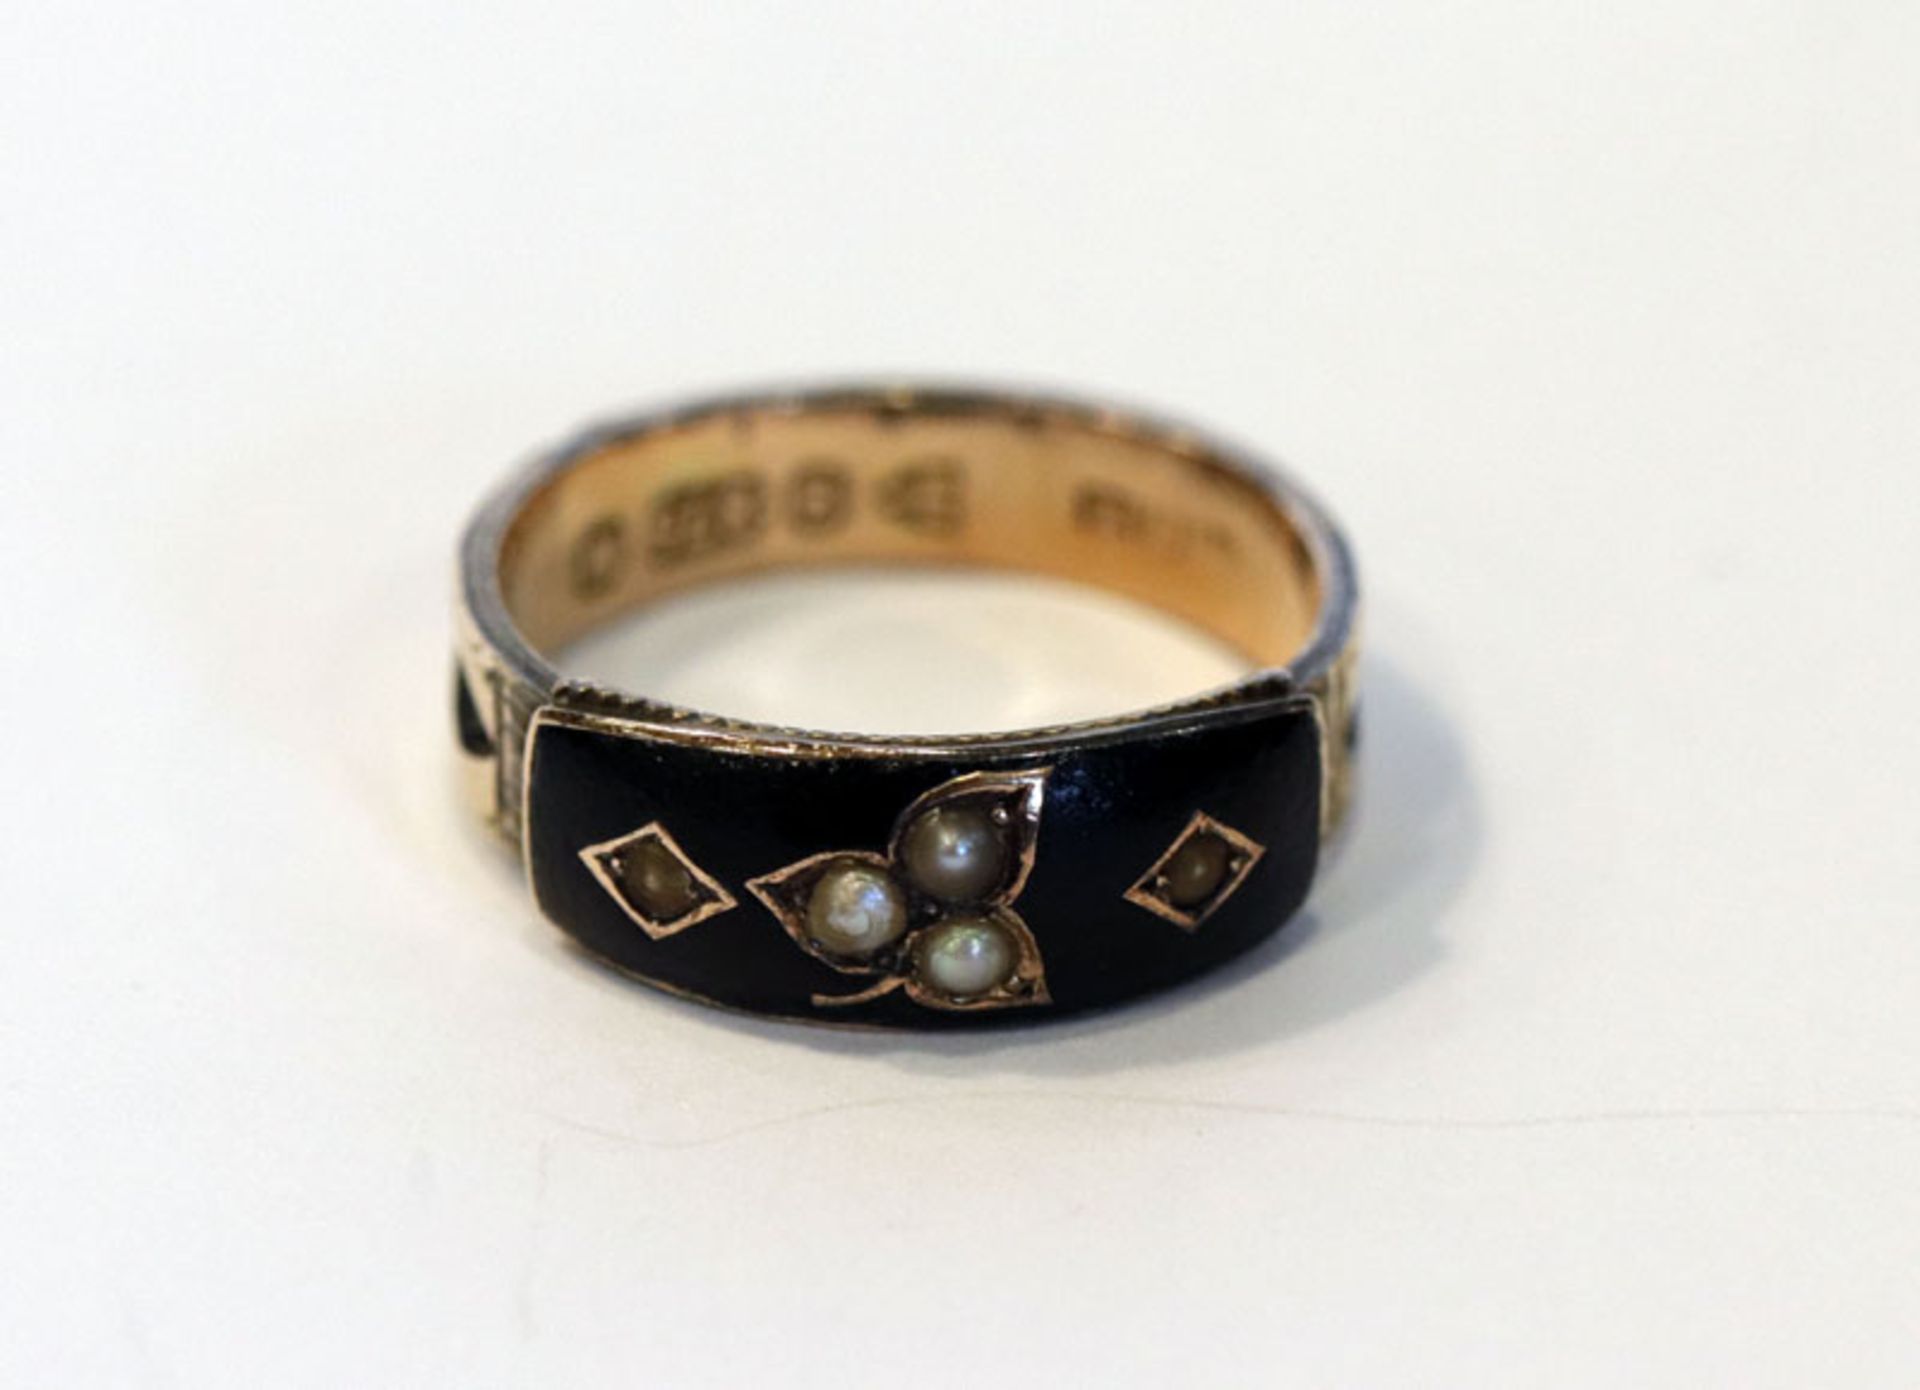 9 k Ring mit schwarzem Emaildekor und Perlchen, gemarkt, Chester, England 1895, Gr. 52, Trage- und